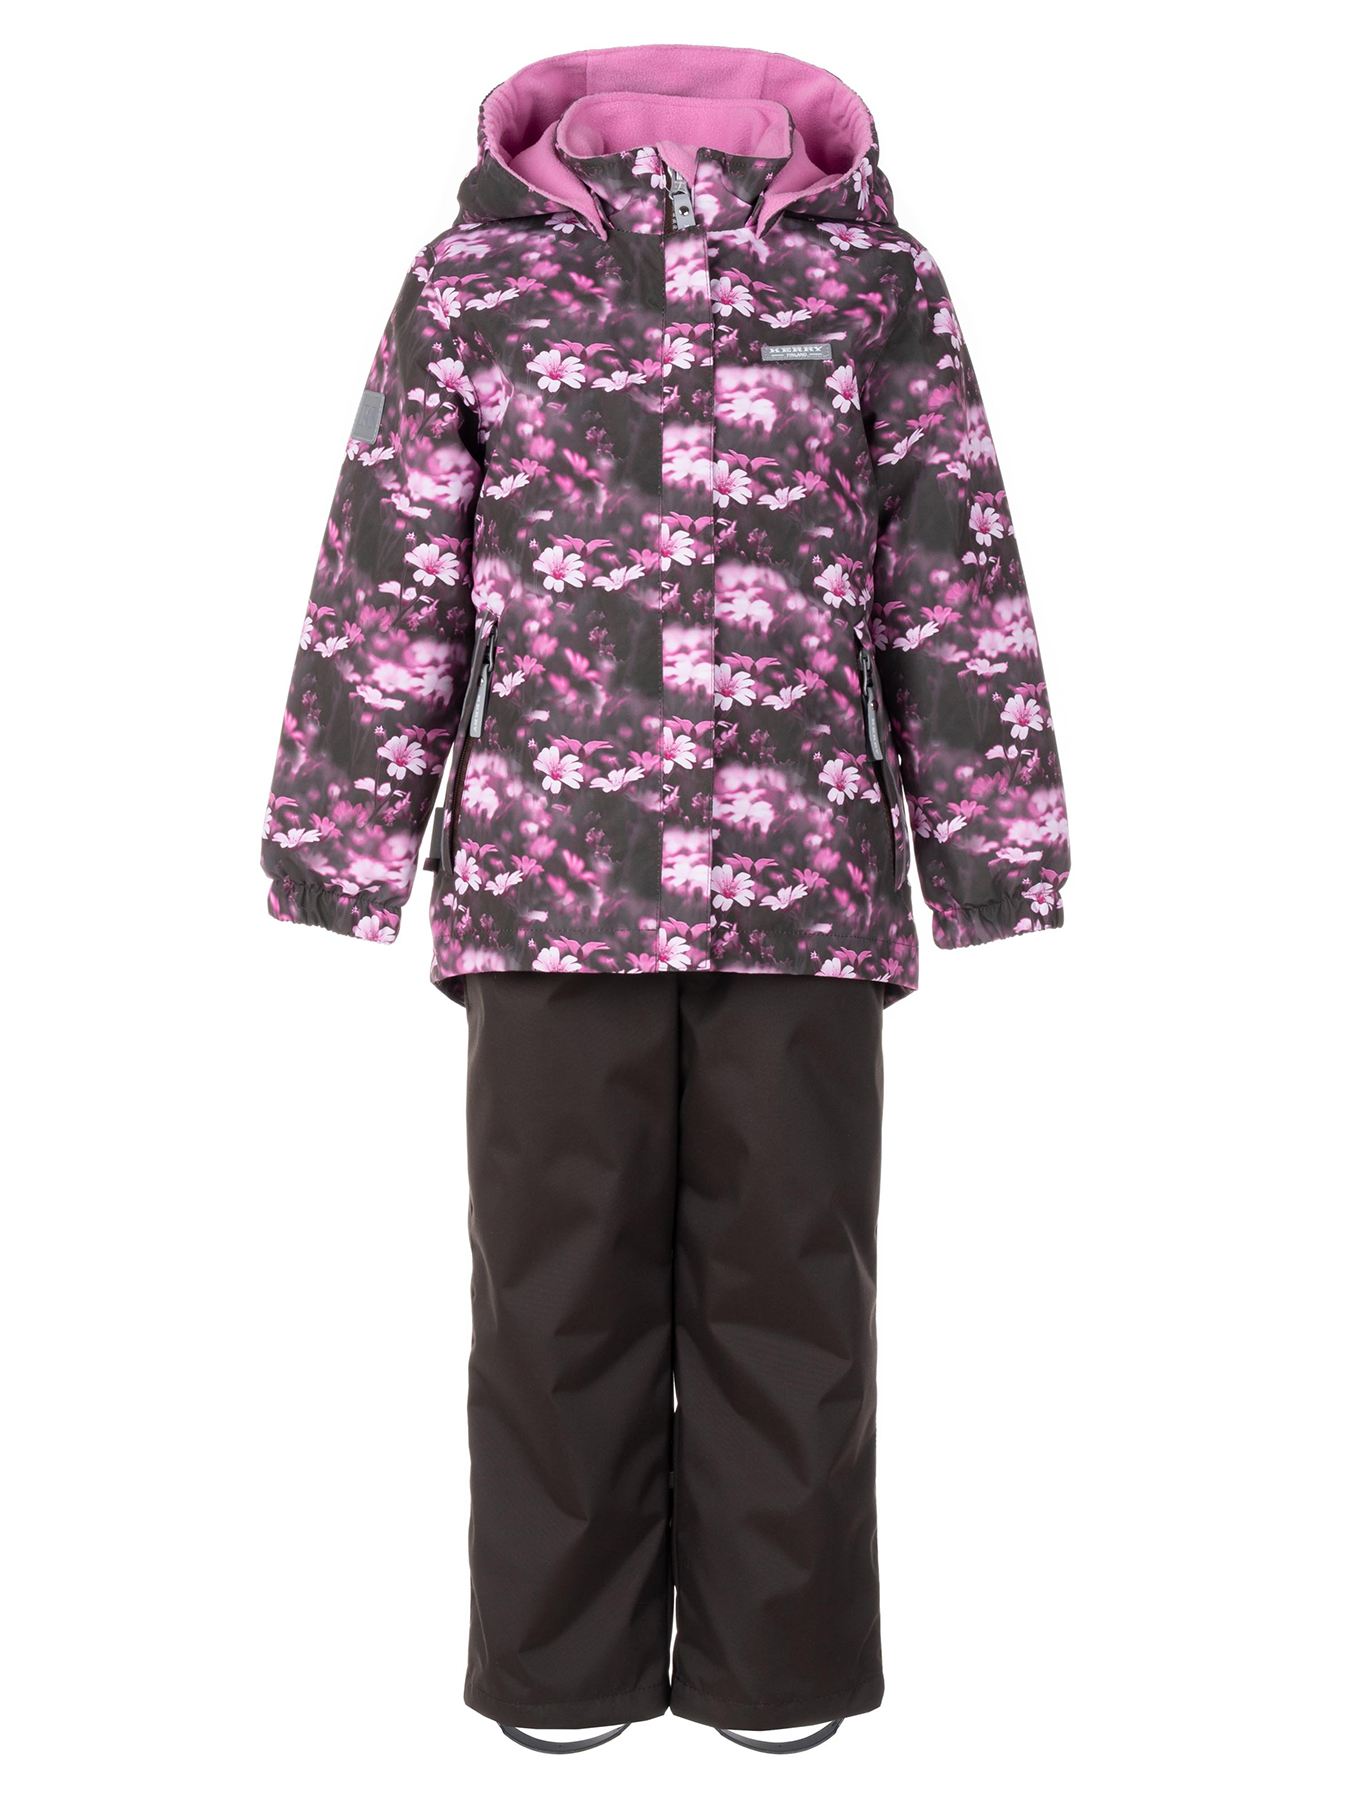 Комплект верхней одежды KERRY HEDVIG K24036A, 3810-темно-коричневый с цветами, 128